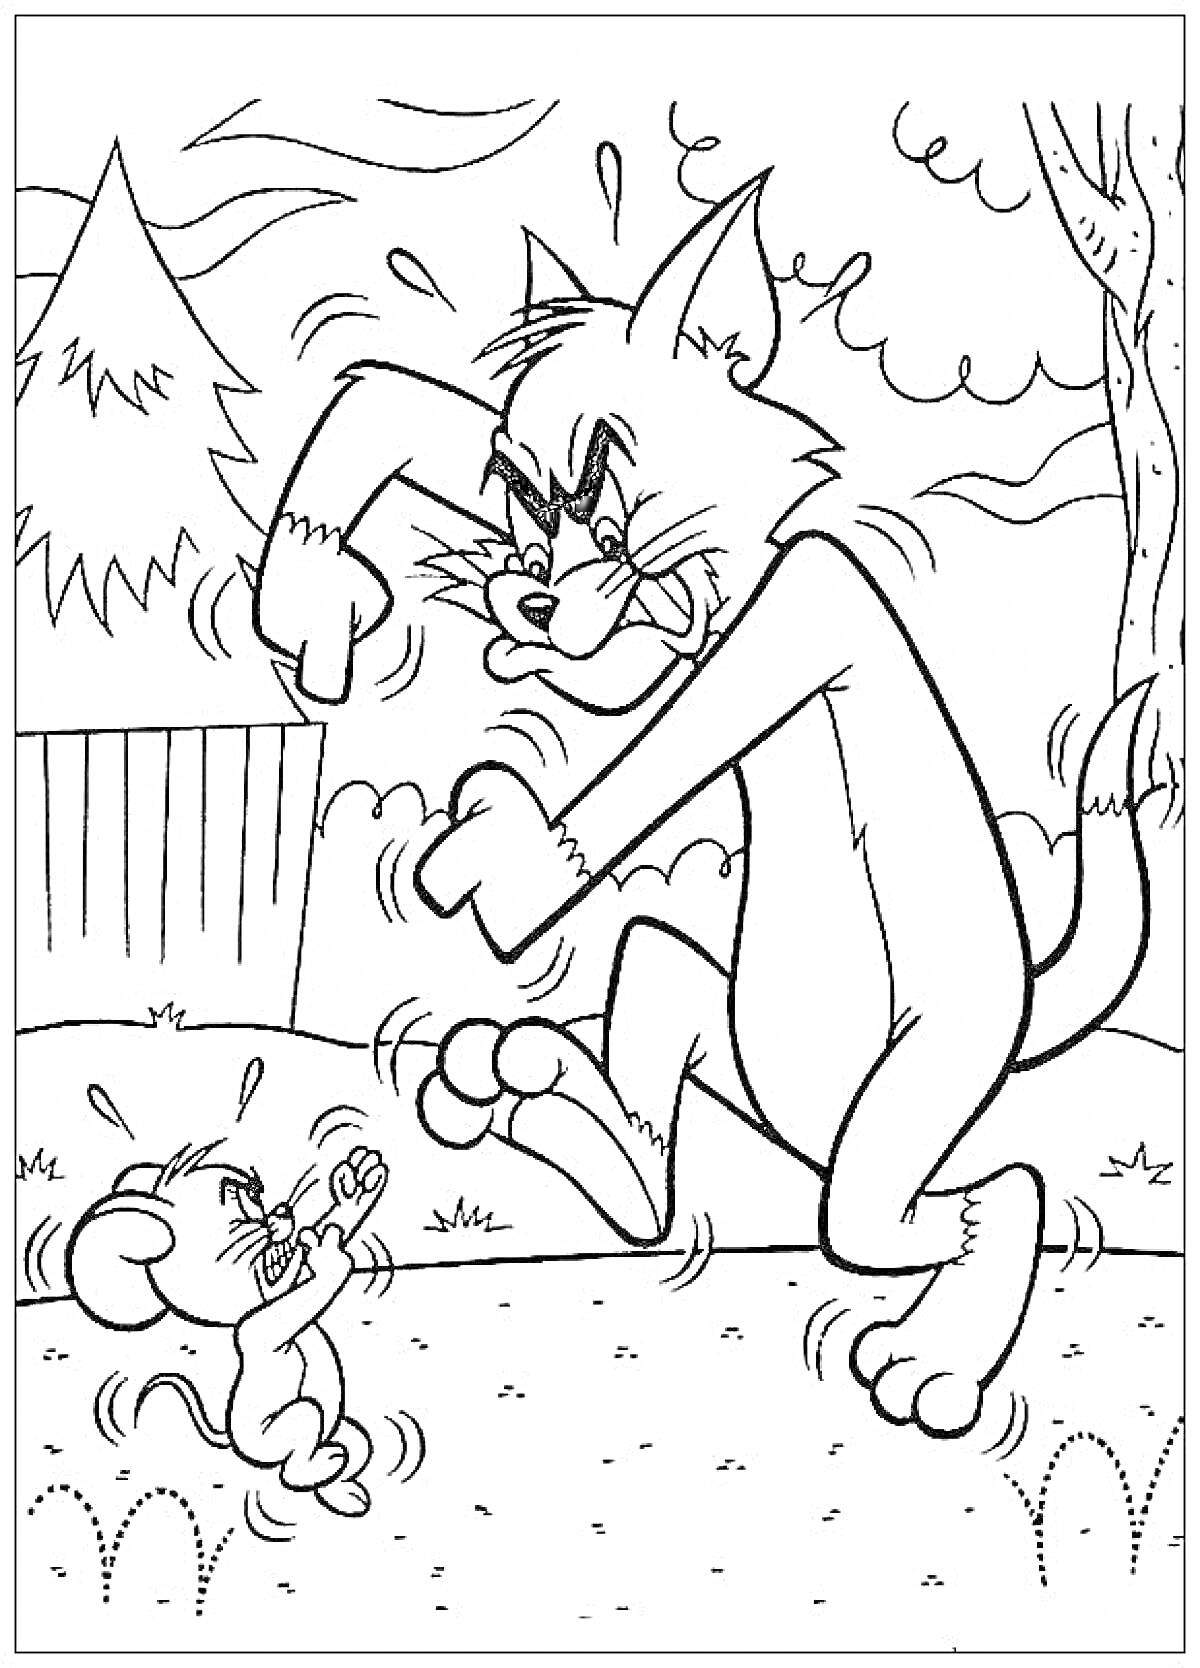 Раскраска Том и Джерри - Том пугает Джерри на улице возле забора и деревьев